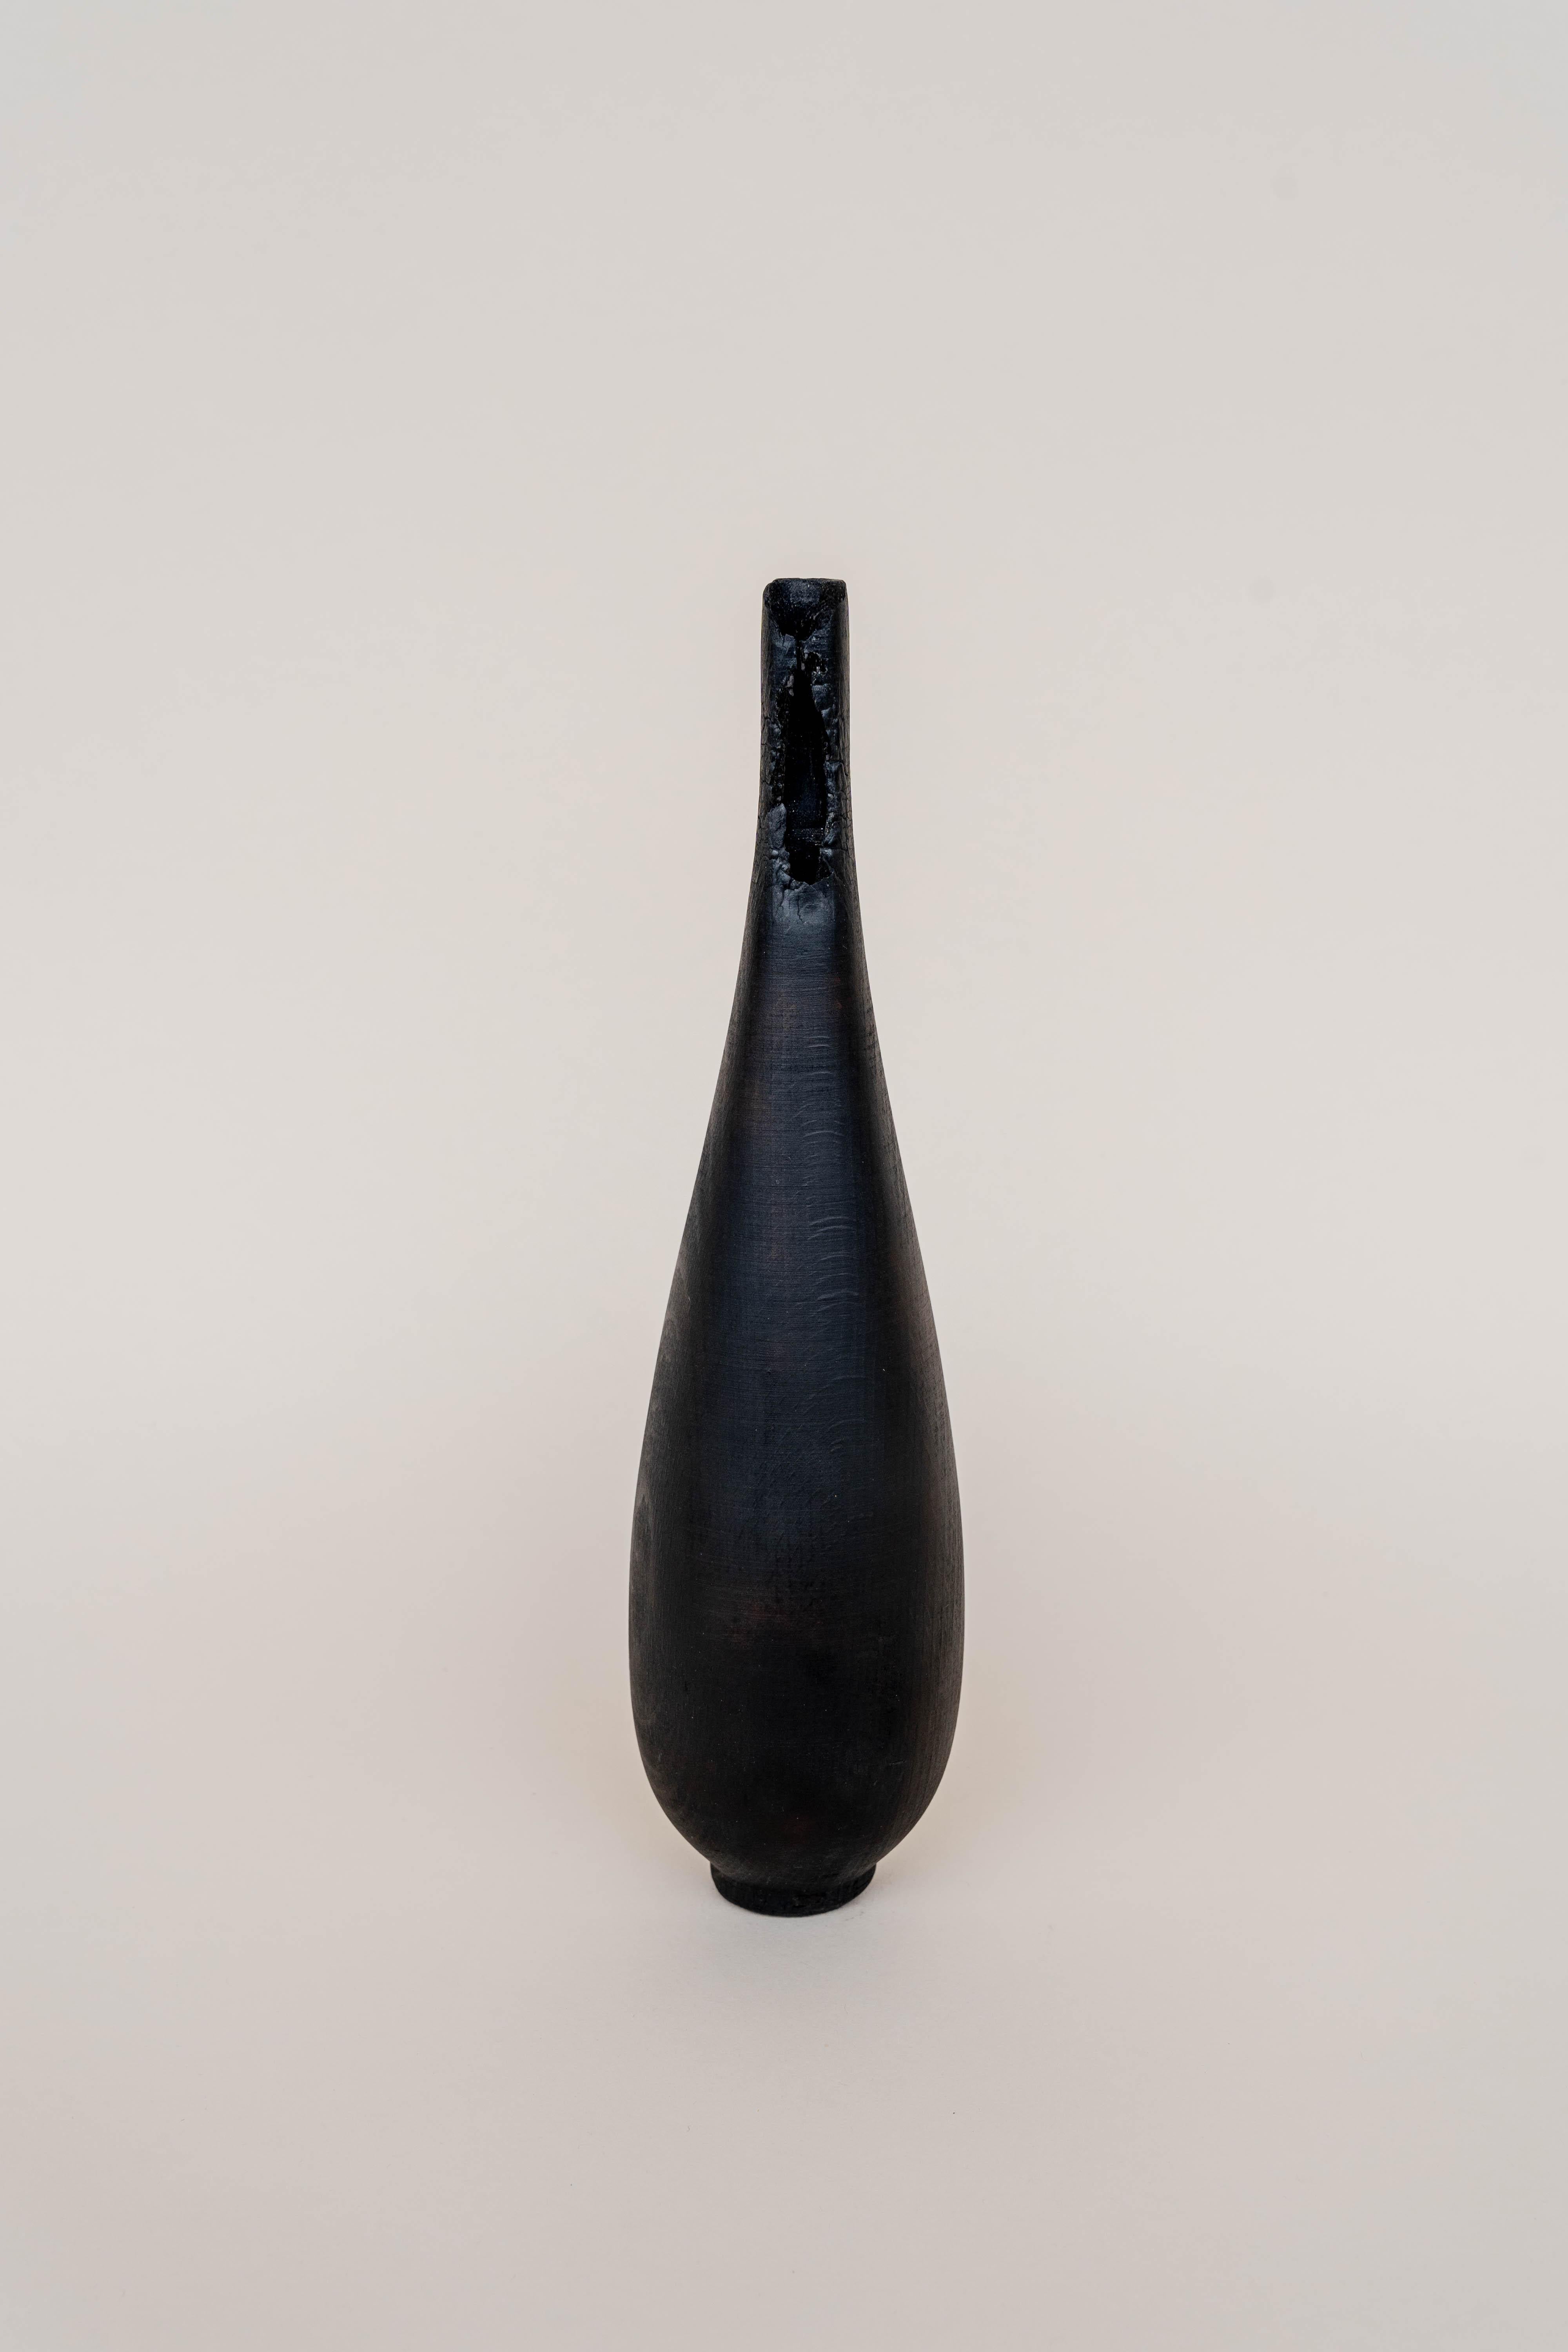 Wood Medium Burnt Vase by Daniel Elkayam For Sale